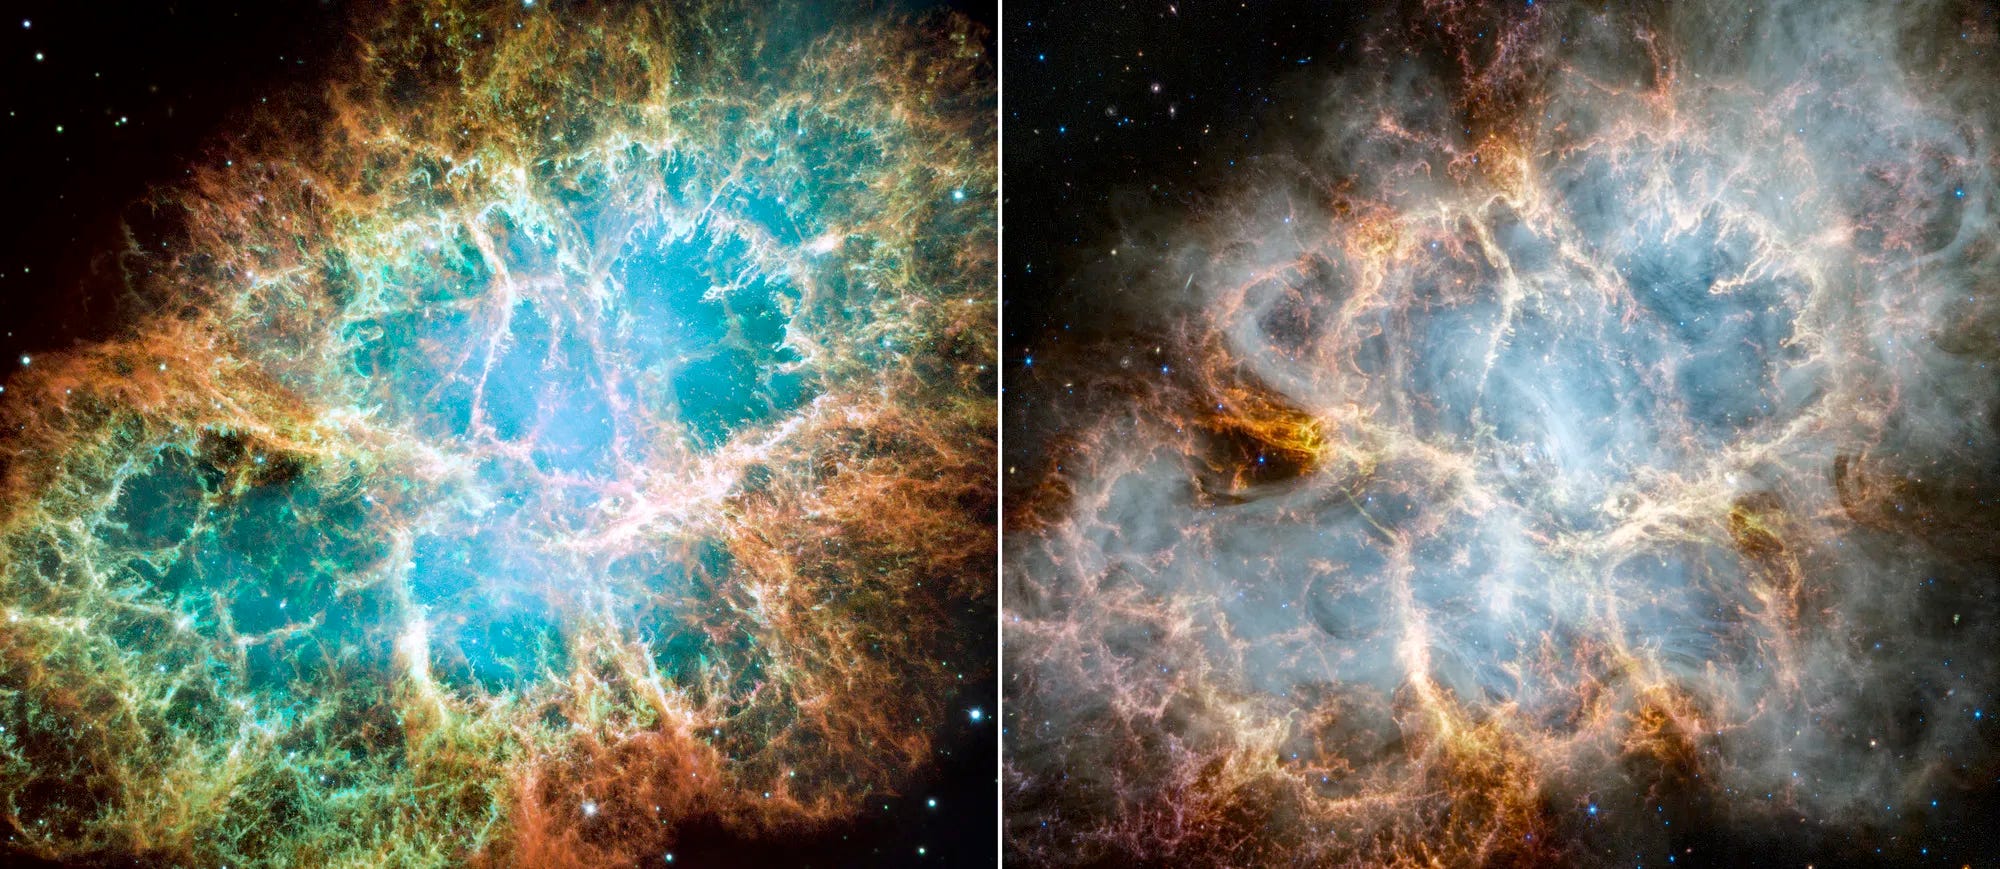 Nebeneinander liegende Bilder des Krebsnebels vom Hubble-Weltraumteleskop und vom James-Webb-Weltraumteleskop mit trüber weißen Wolken, die im JWST-Bild zu sehen sind.